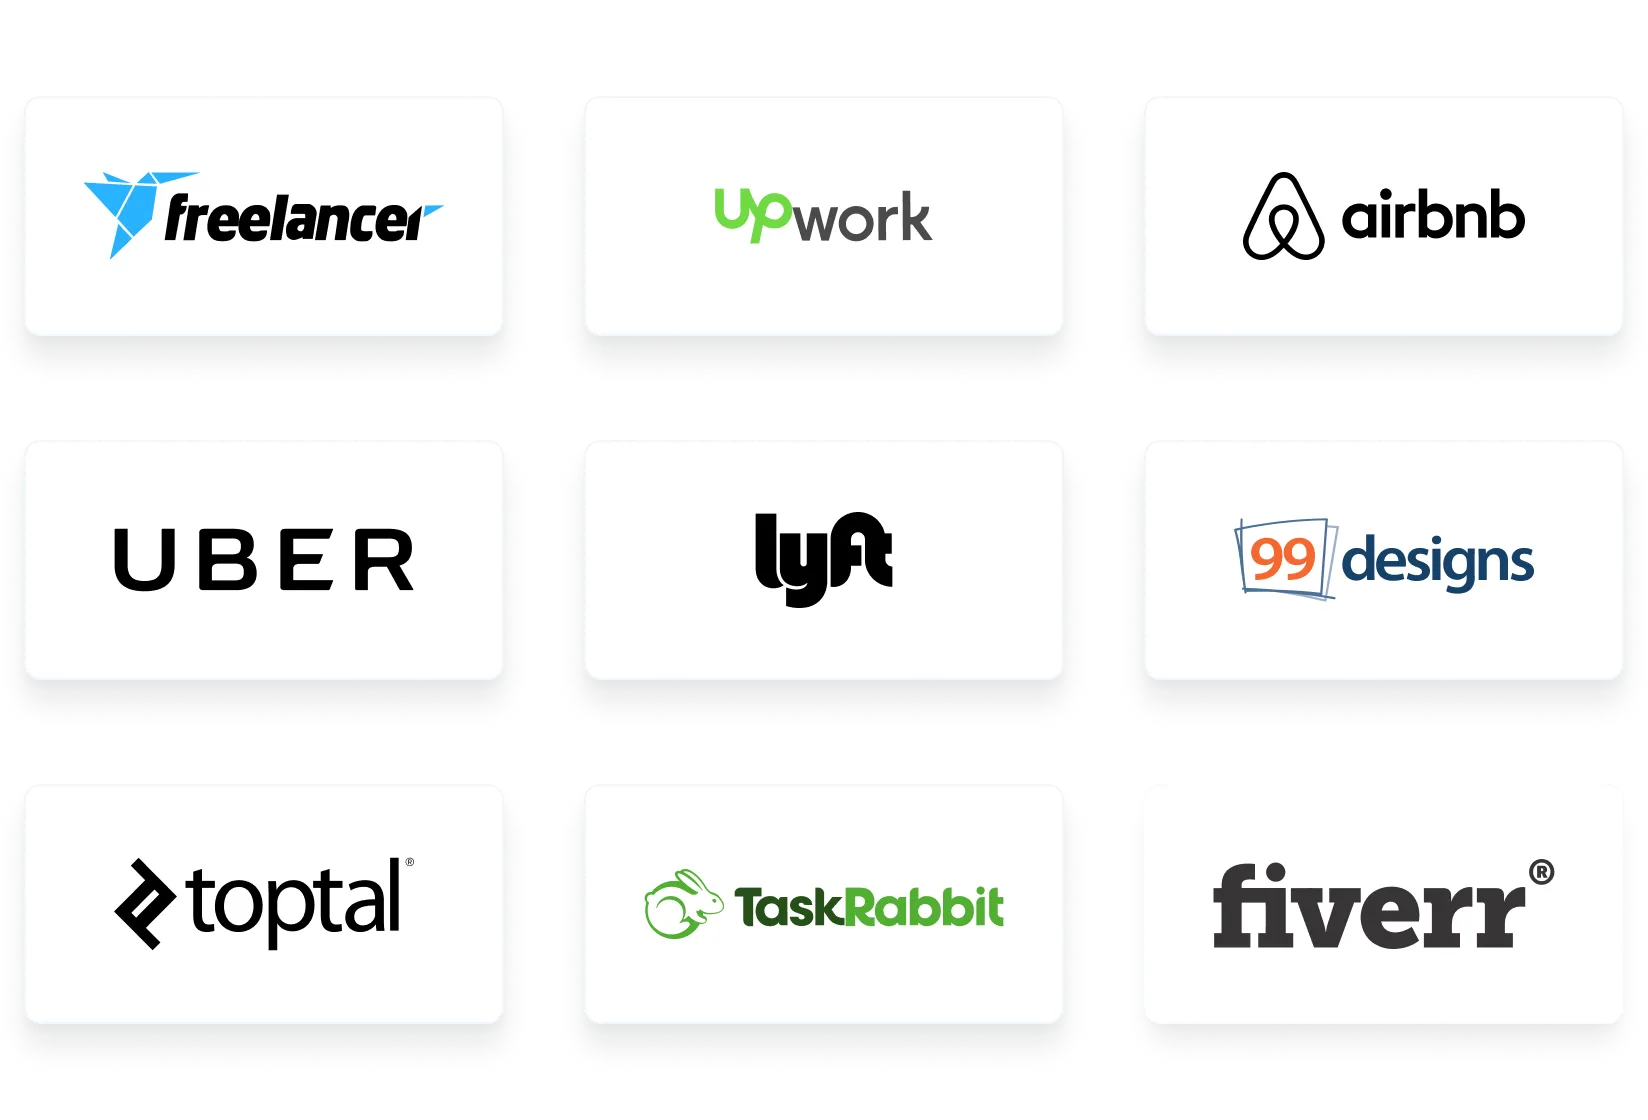 Image showing logos of freelance services and big gig economy marketplaces